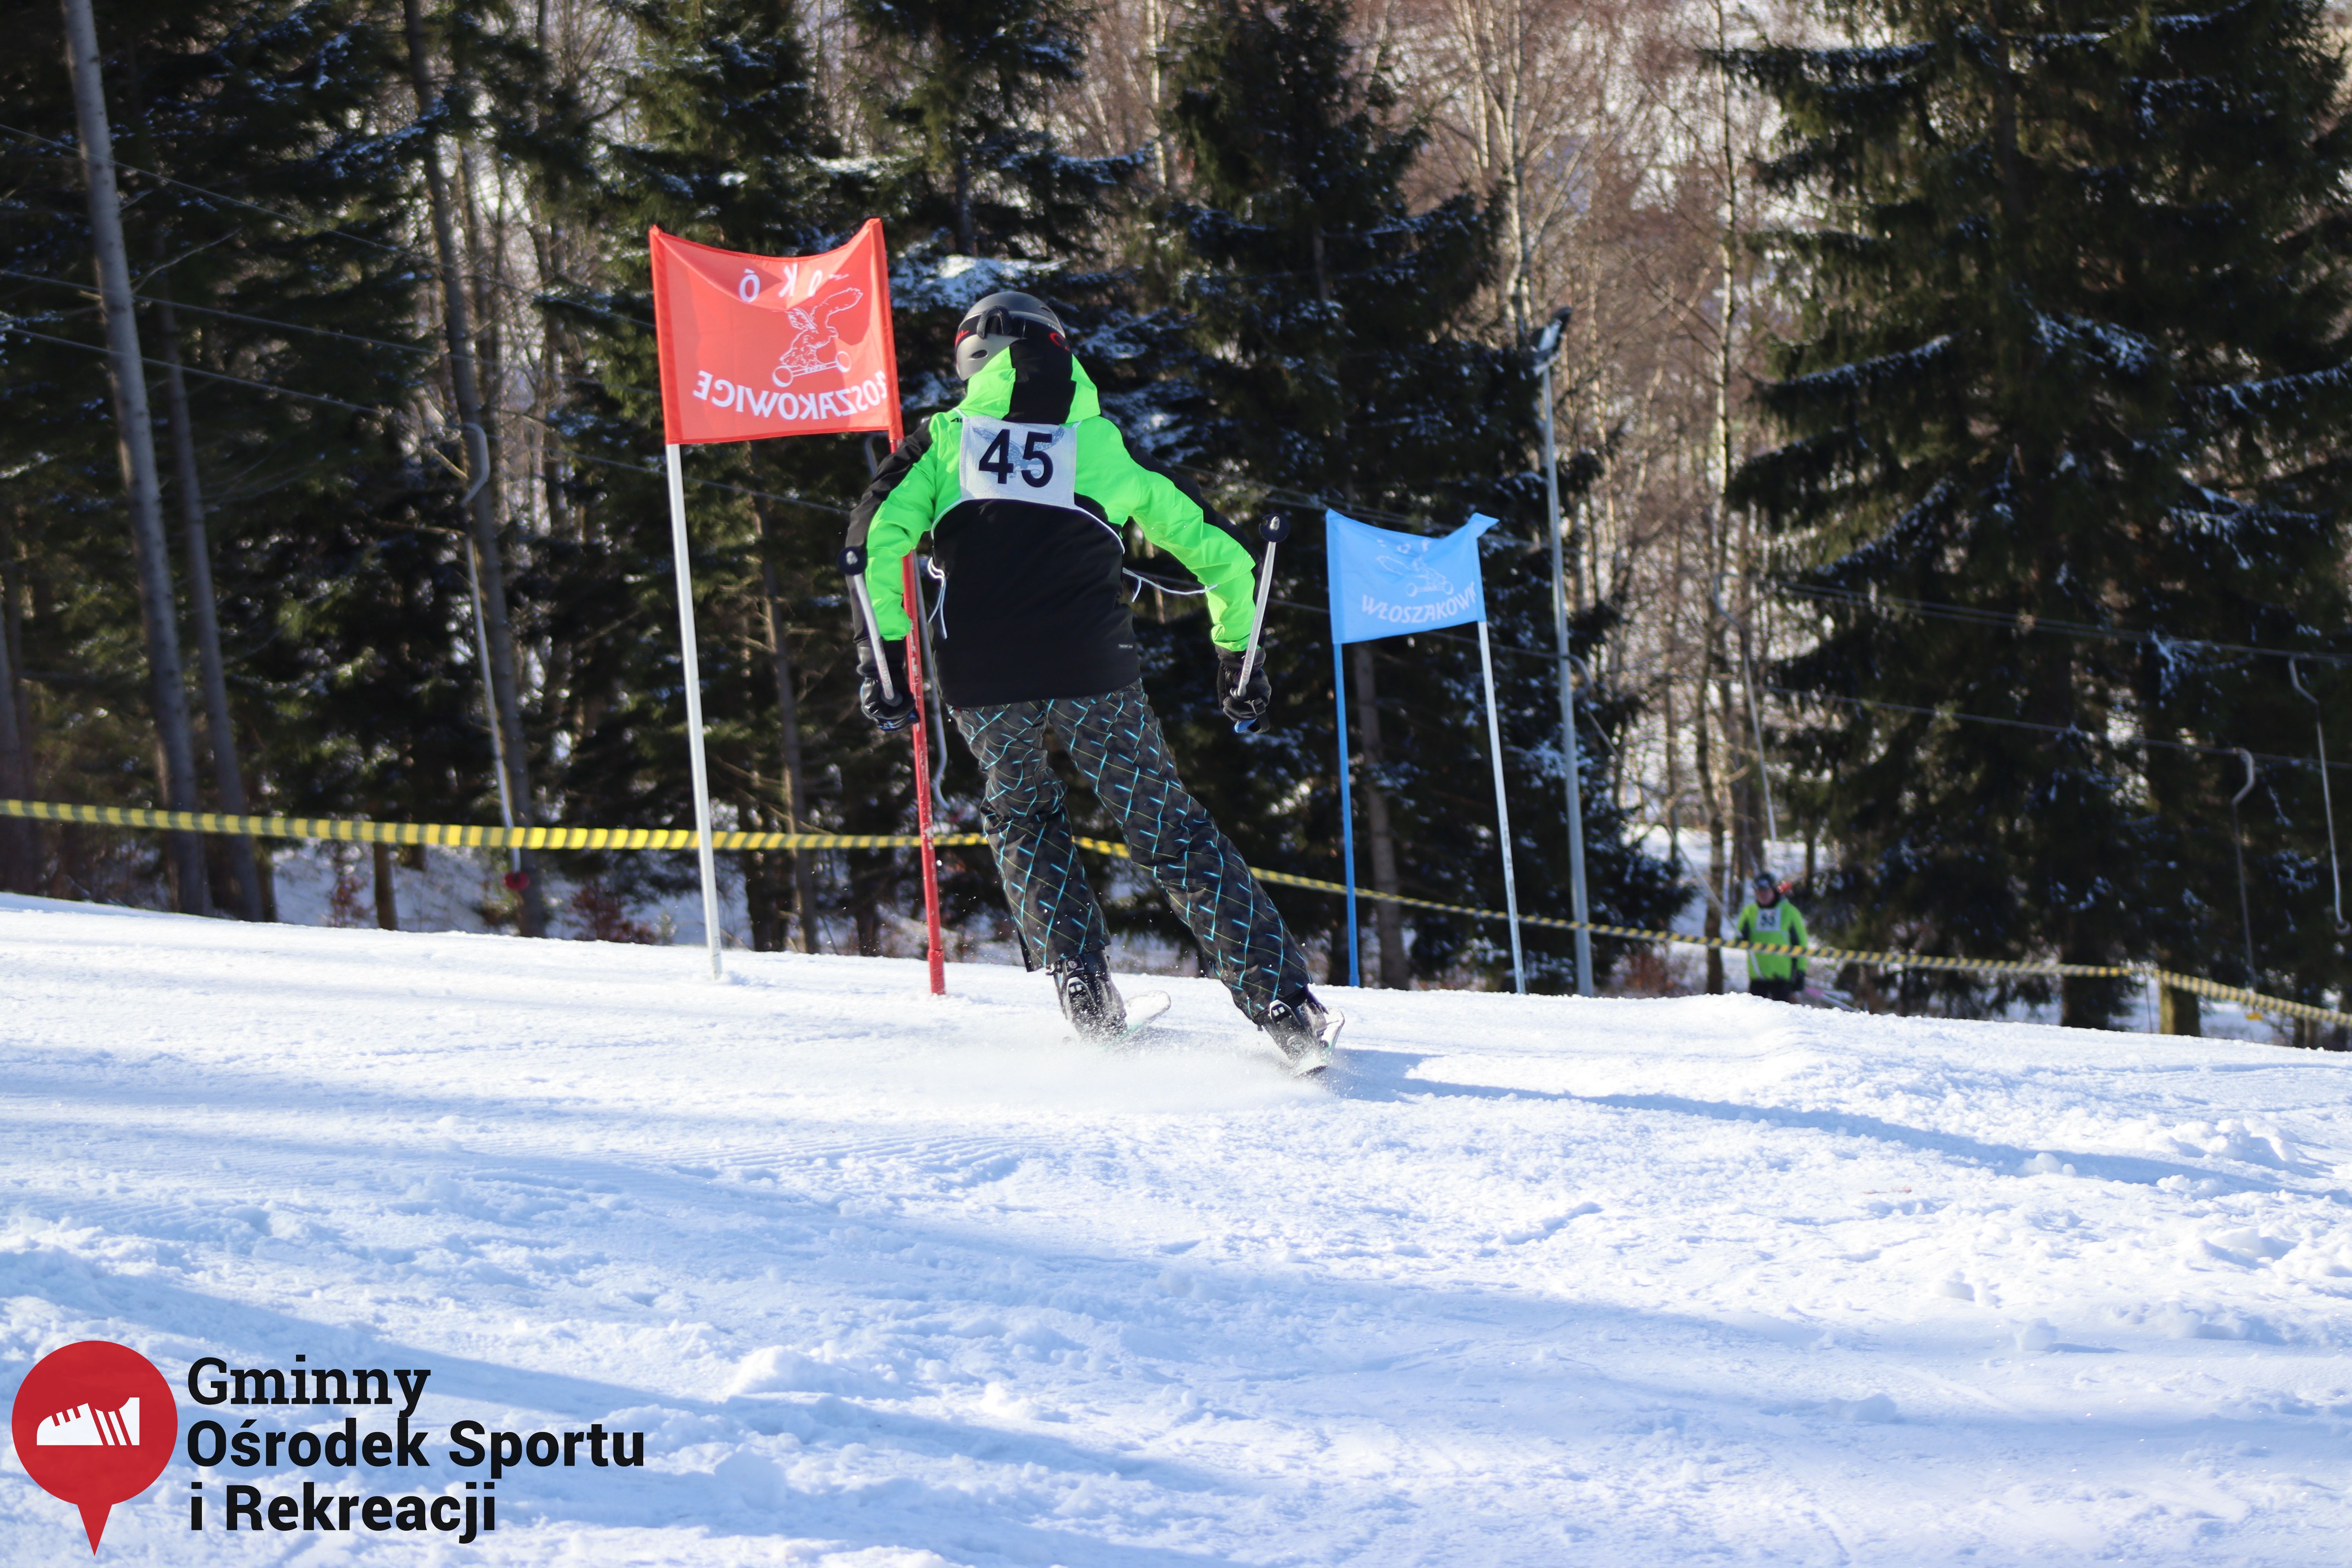 2022.02.12 - 18. Mistrzostwa Gminy Woszakowice w narciarstwie062.jpg - 2,18 MB